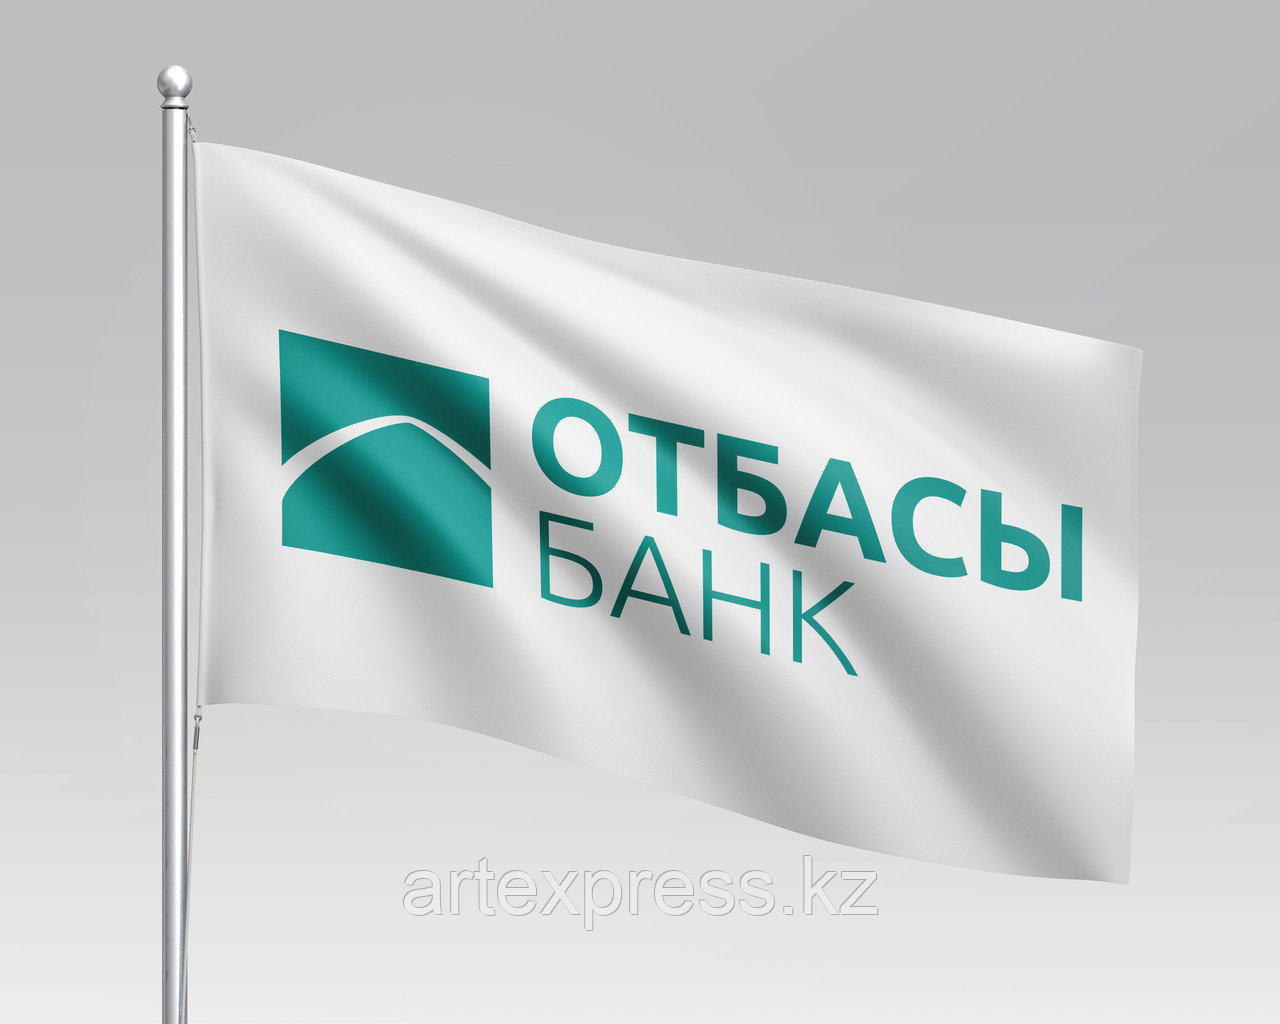 Флаг компании Отбасы Банк, 1х2 м